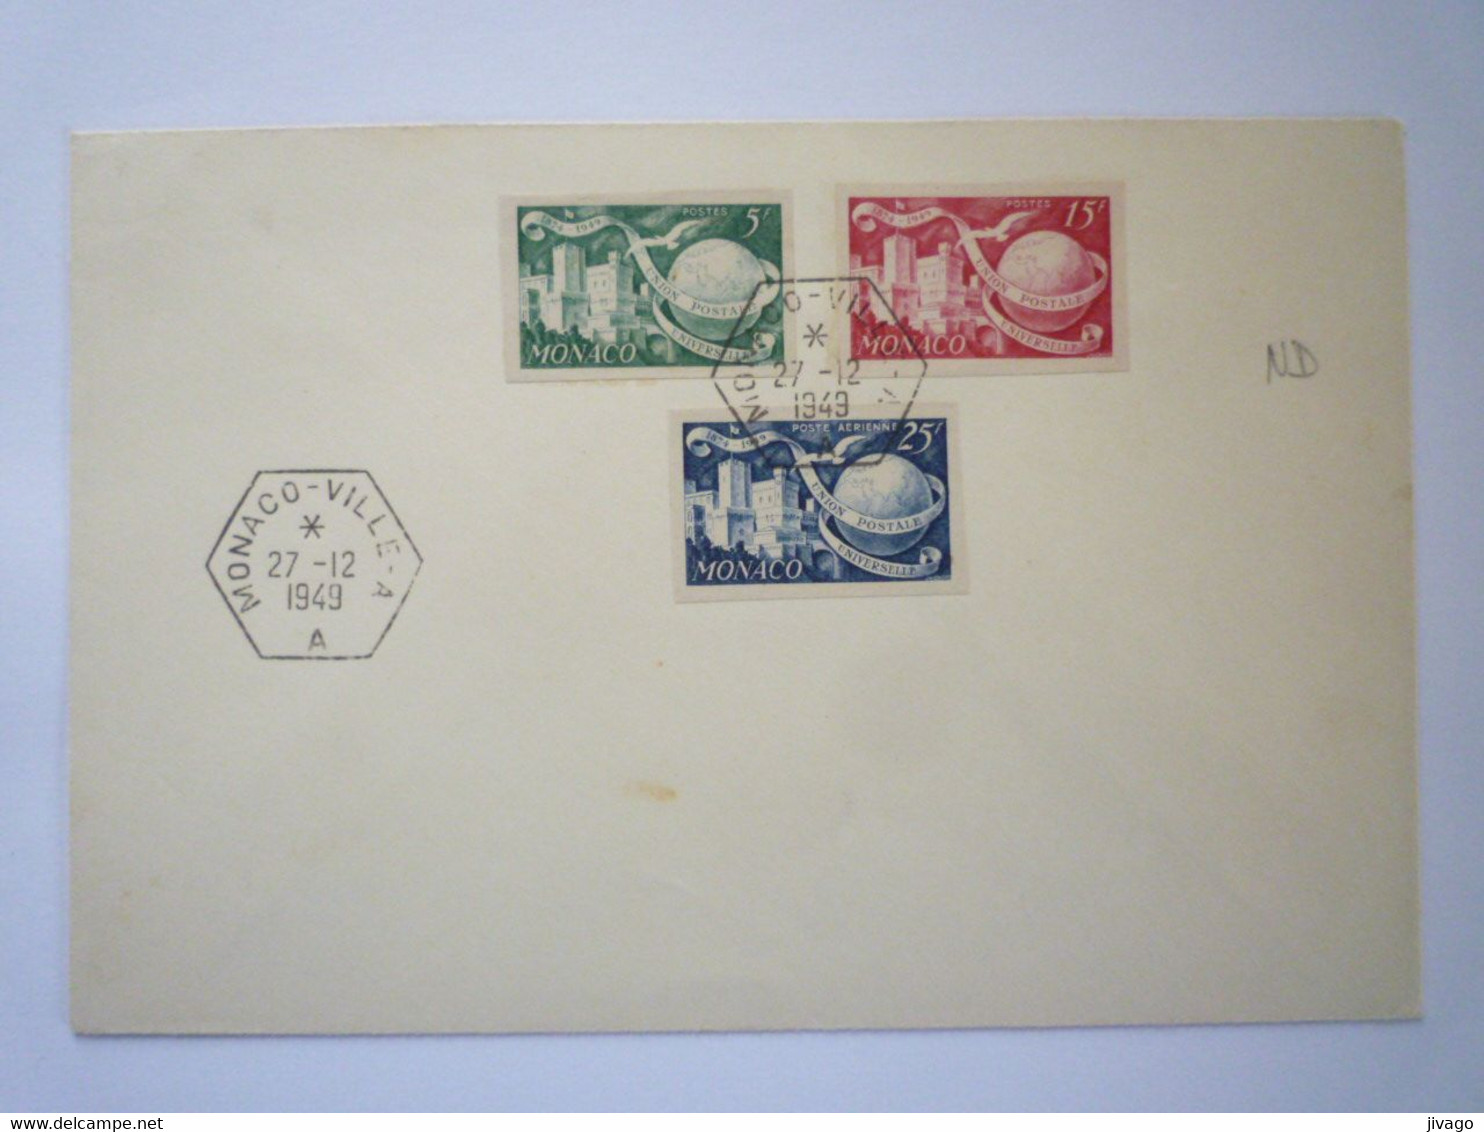 22 - M 4162  Enveloppe Au Départ De MONACO - VILLE - A   (Timbres Non Dentelés)  1949   XXX - Storia Postale